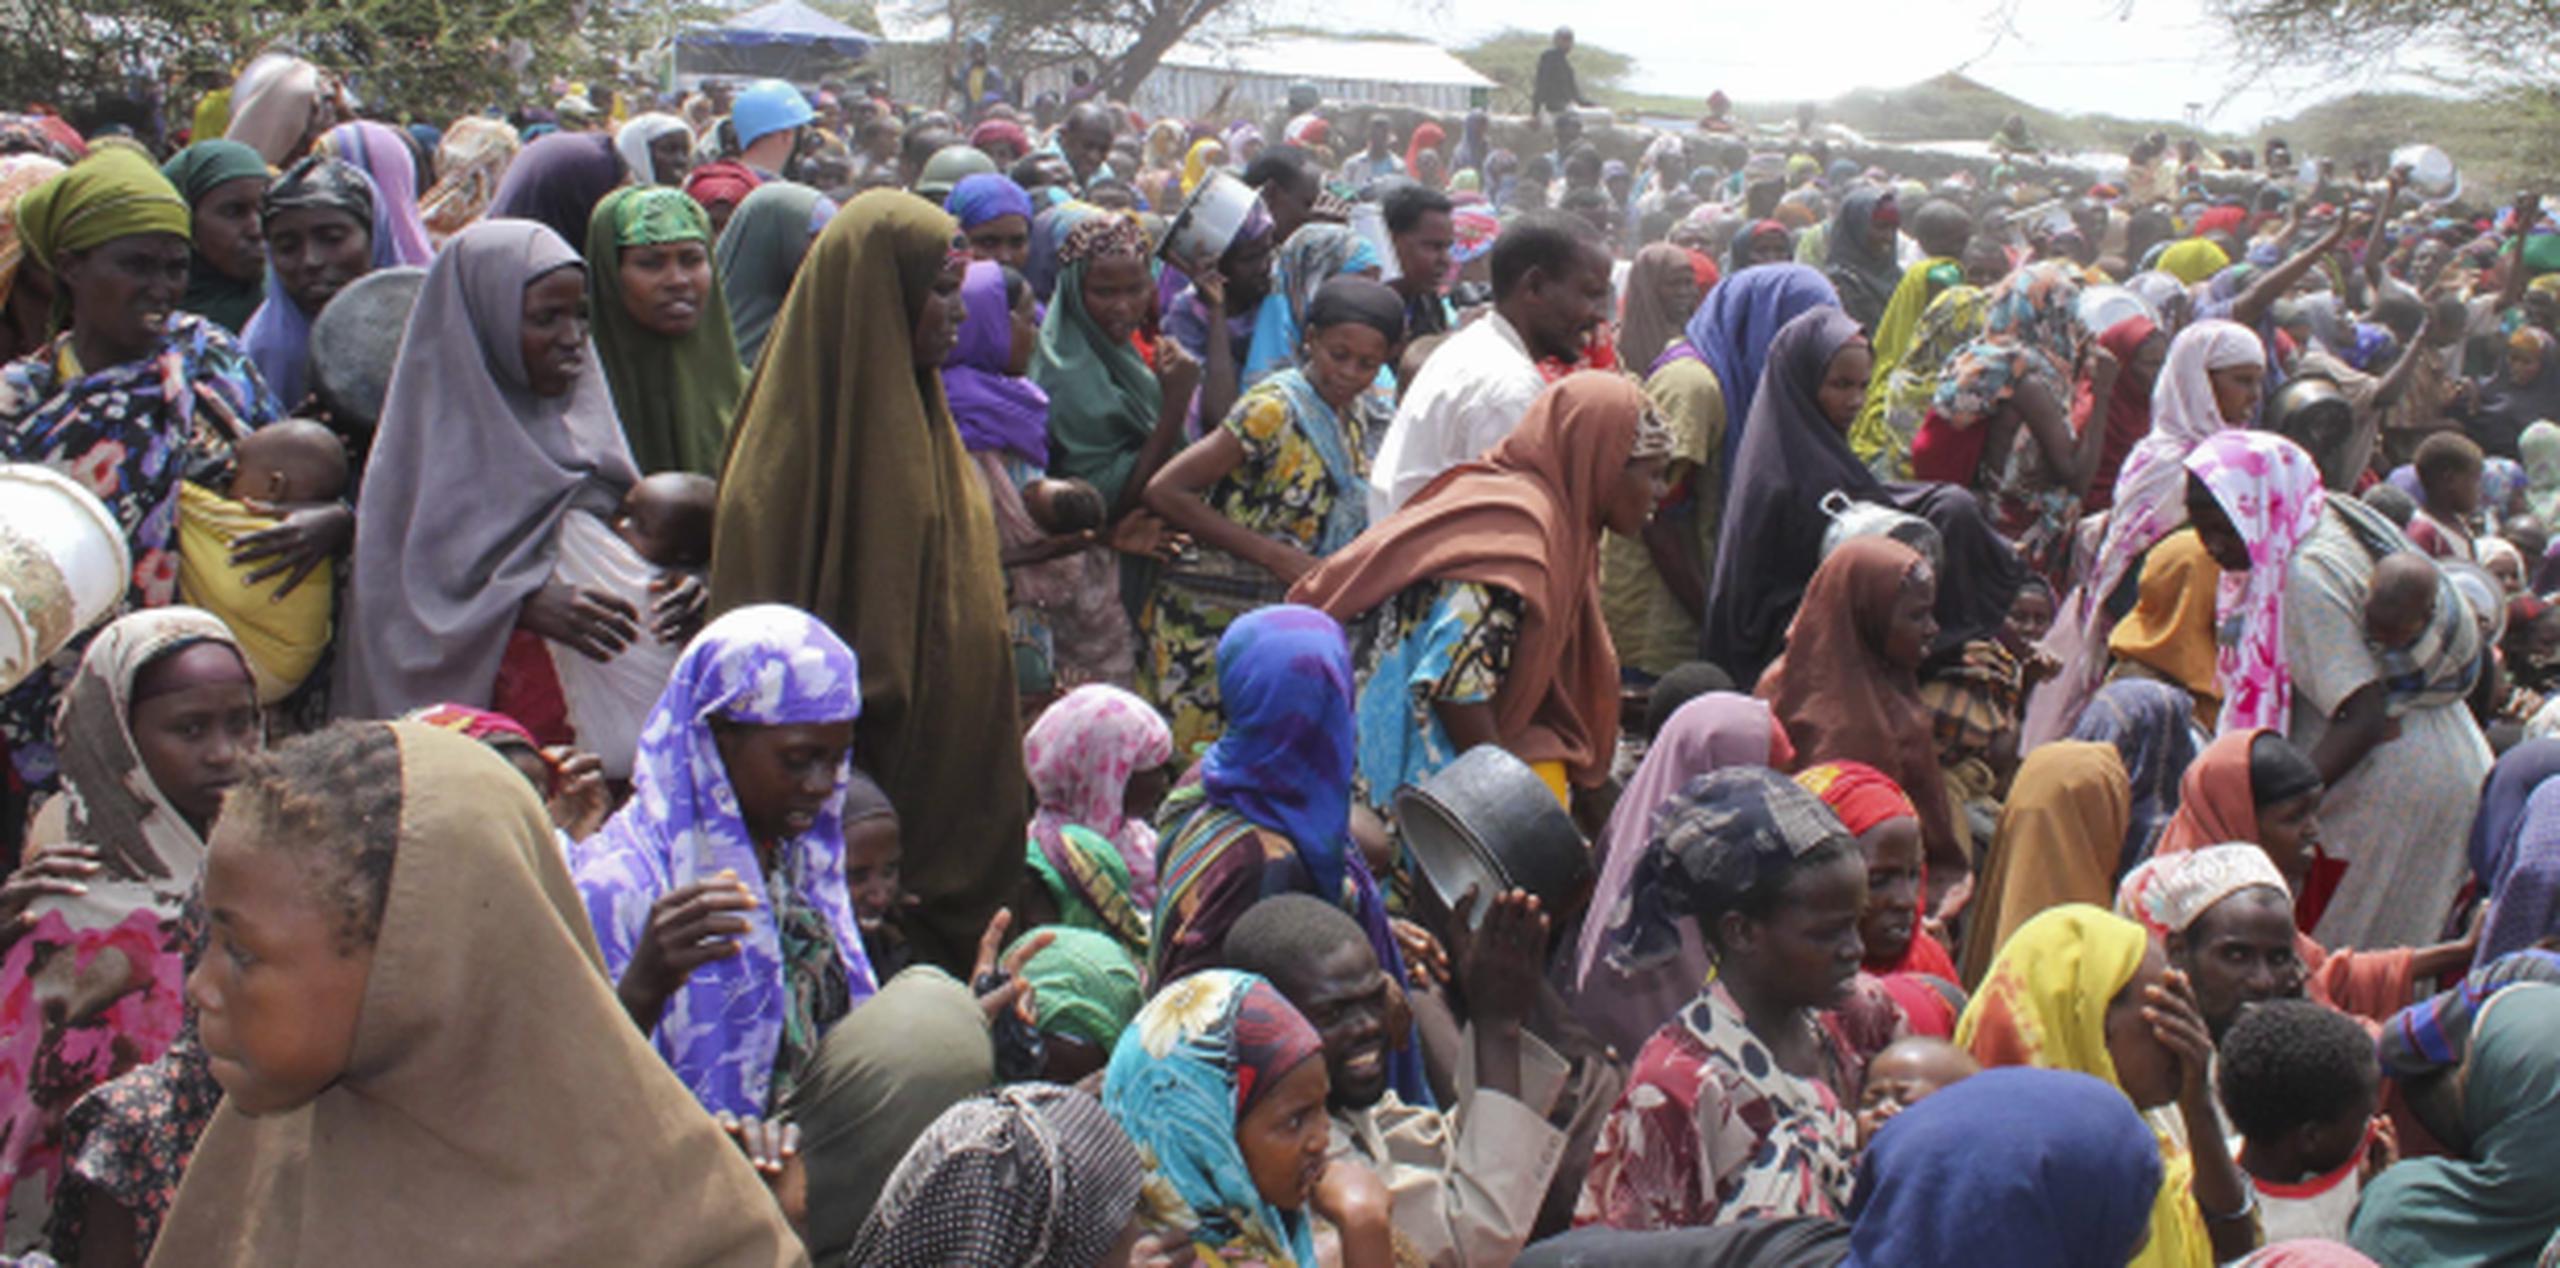 Los centros que acogen a refugiados y desplazados en Somalia se han visto inundado por personas que huyen de la hambruna y los conflictos bélicos. (EFE/ABUKAR ALBADRI)